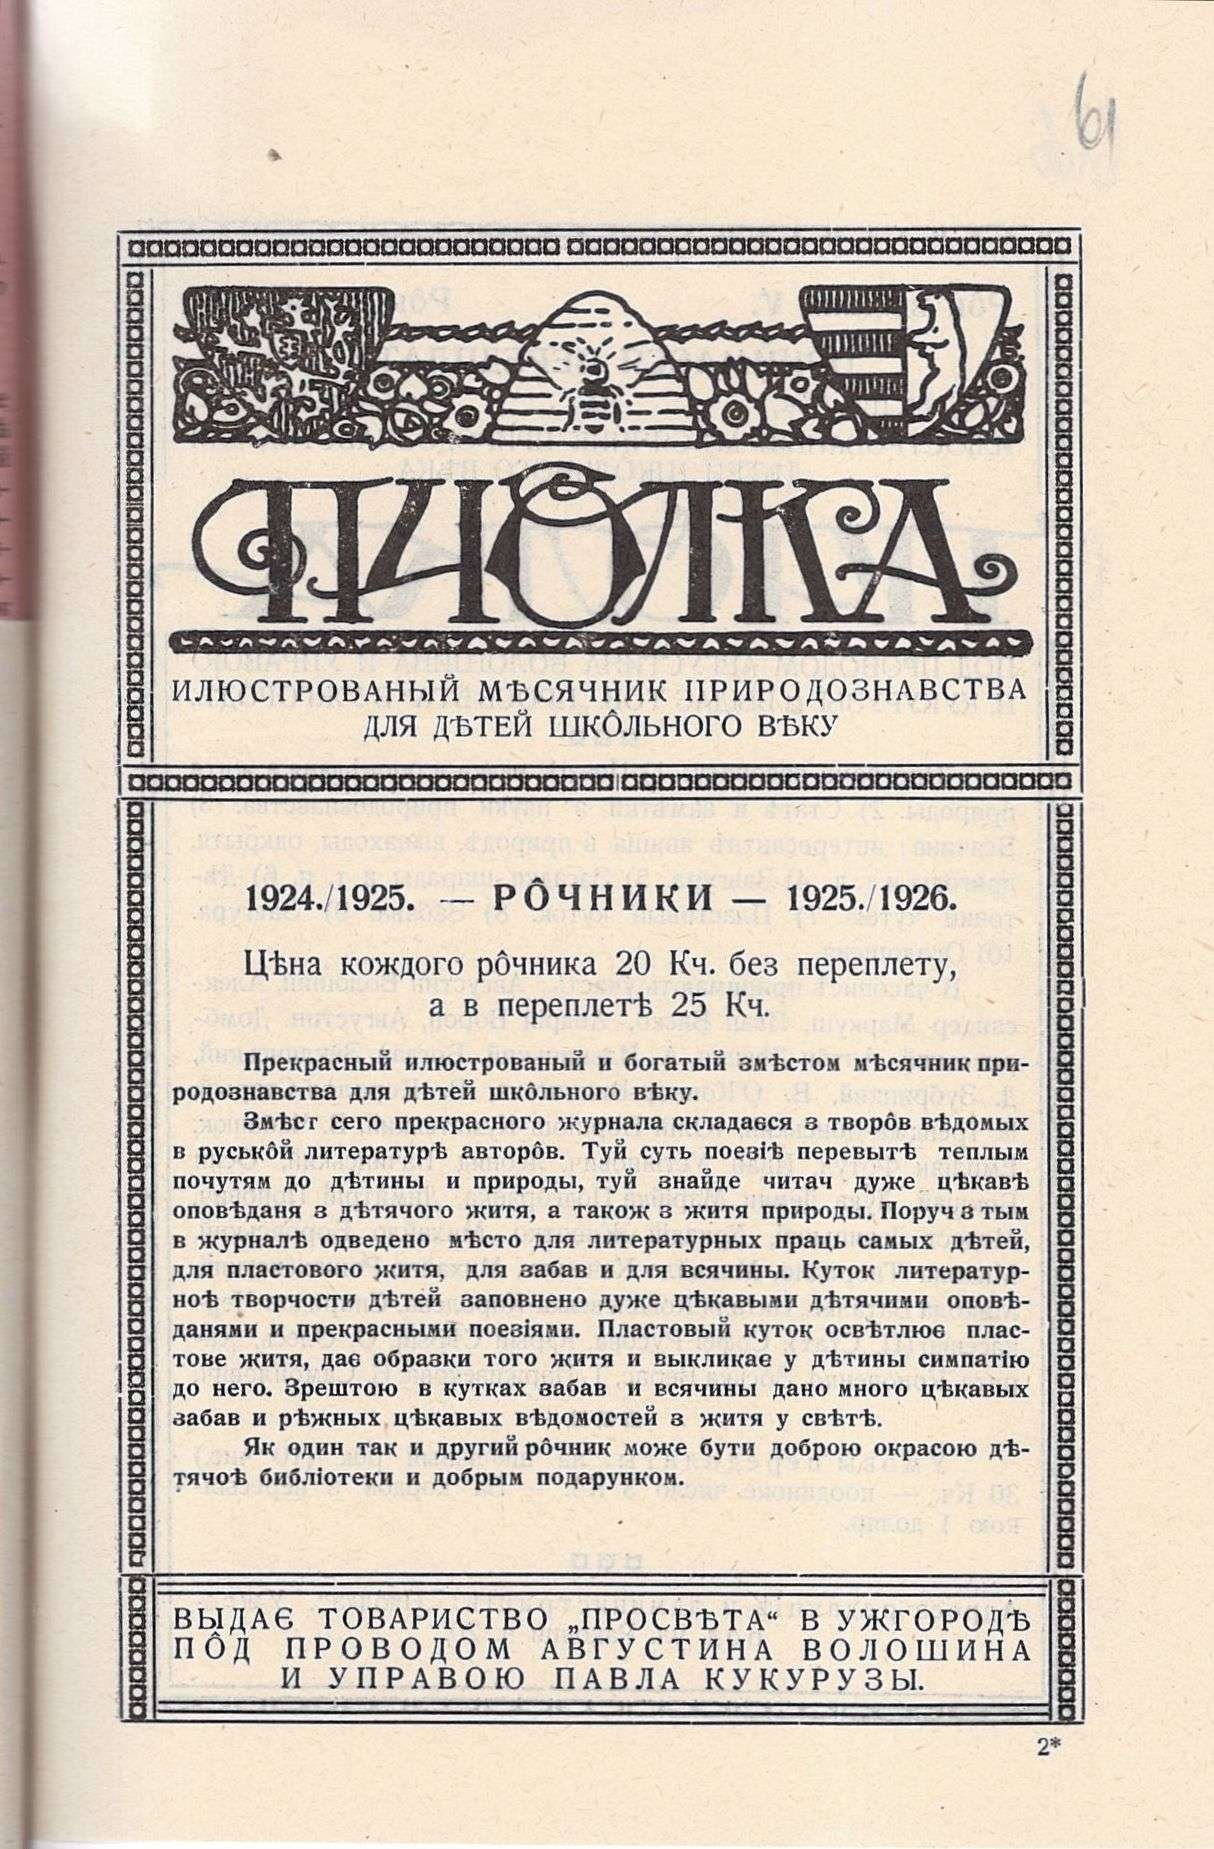 Каталоги Редакції природничого часопису «Пчолка» в Ужгороді. 1925 р.